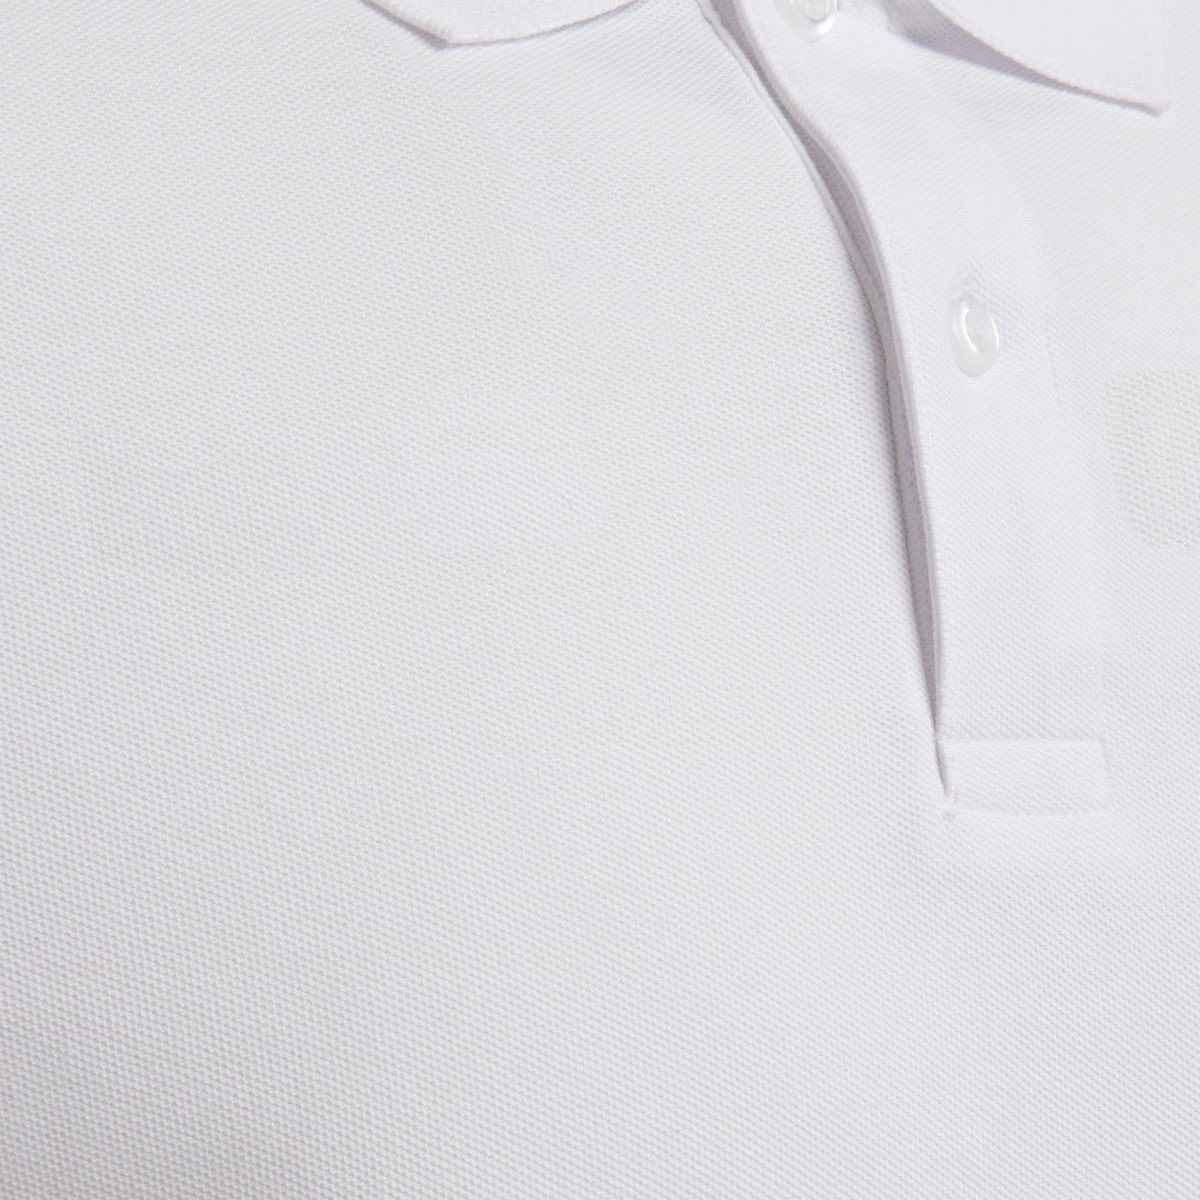 T-Shirt 9001 COTTON White Herren hummel POLO Poloshirts - HMLGOMover